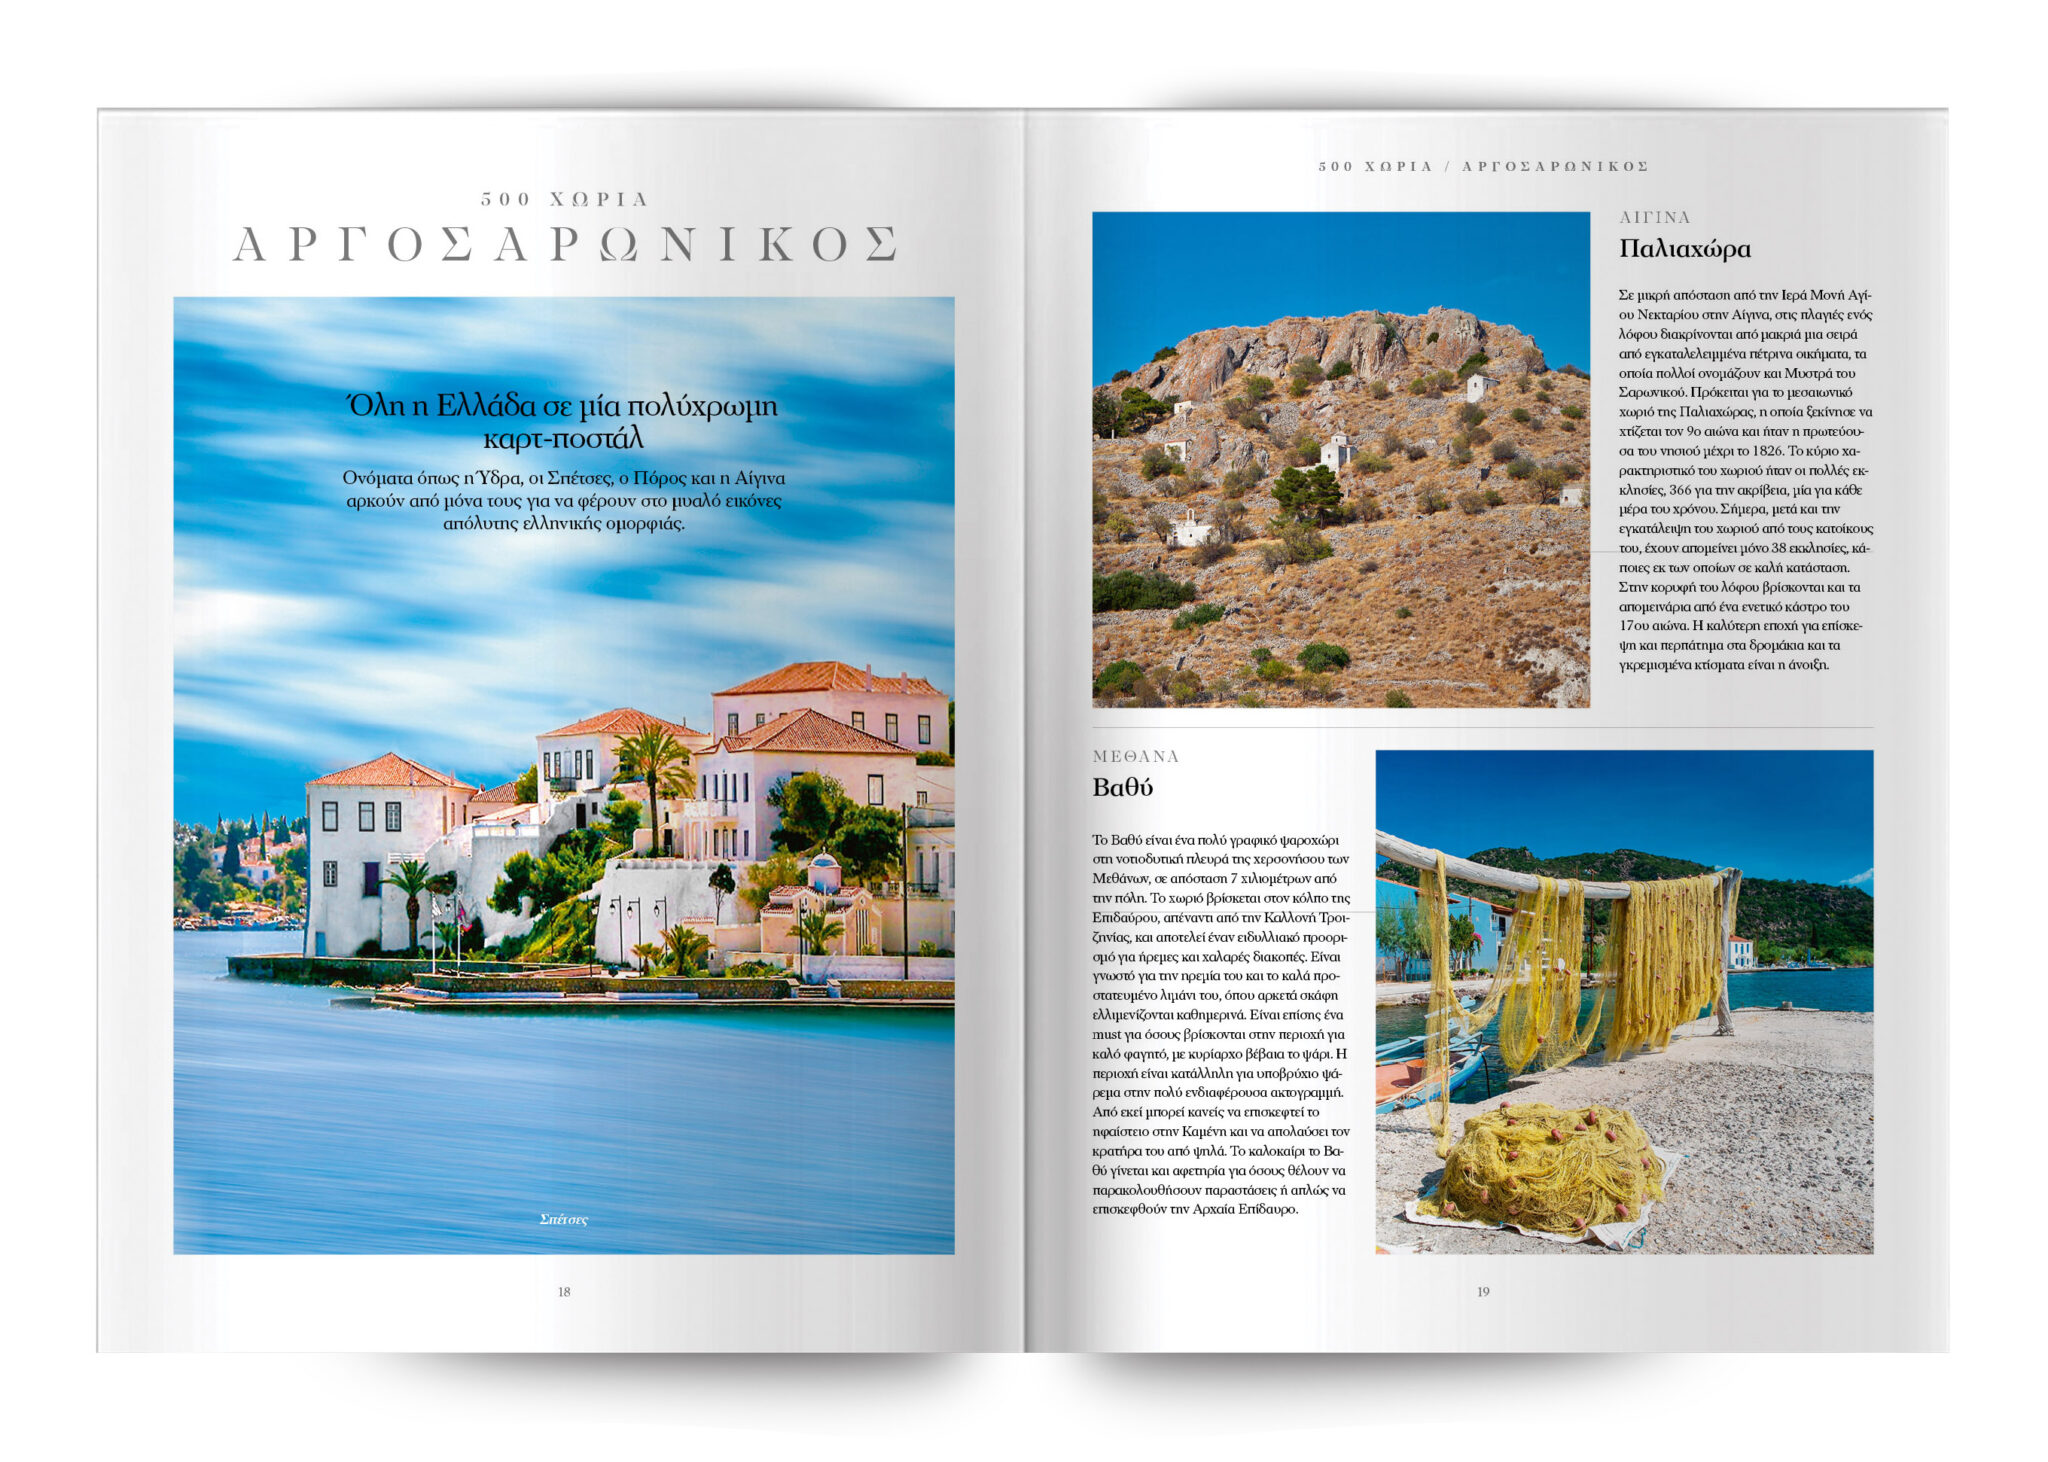 Μια μαγευτική περιπέτεια στα 500 χωριά και παραδοσιακούς οικισμούς της Ελλάδας
